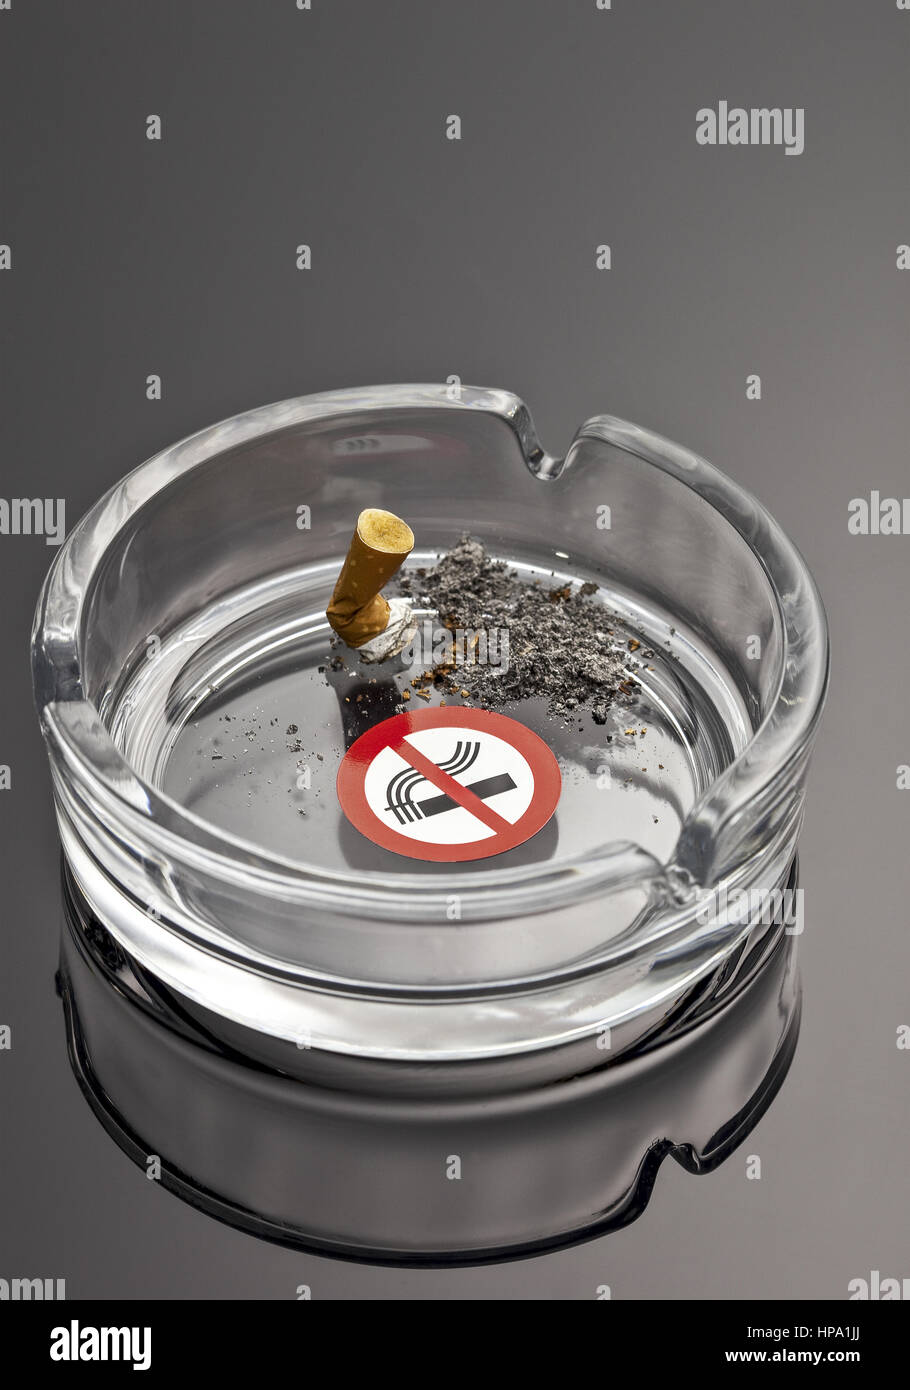 Zigarette in Aschenbecher ausgedrueckt, Verbotszeichen Stock Photo